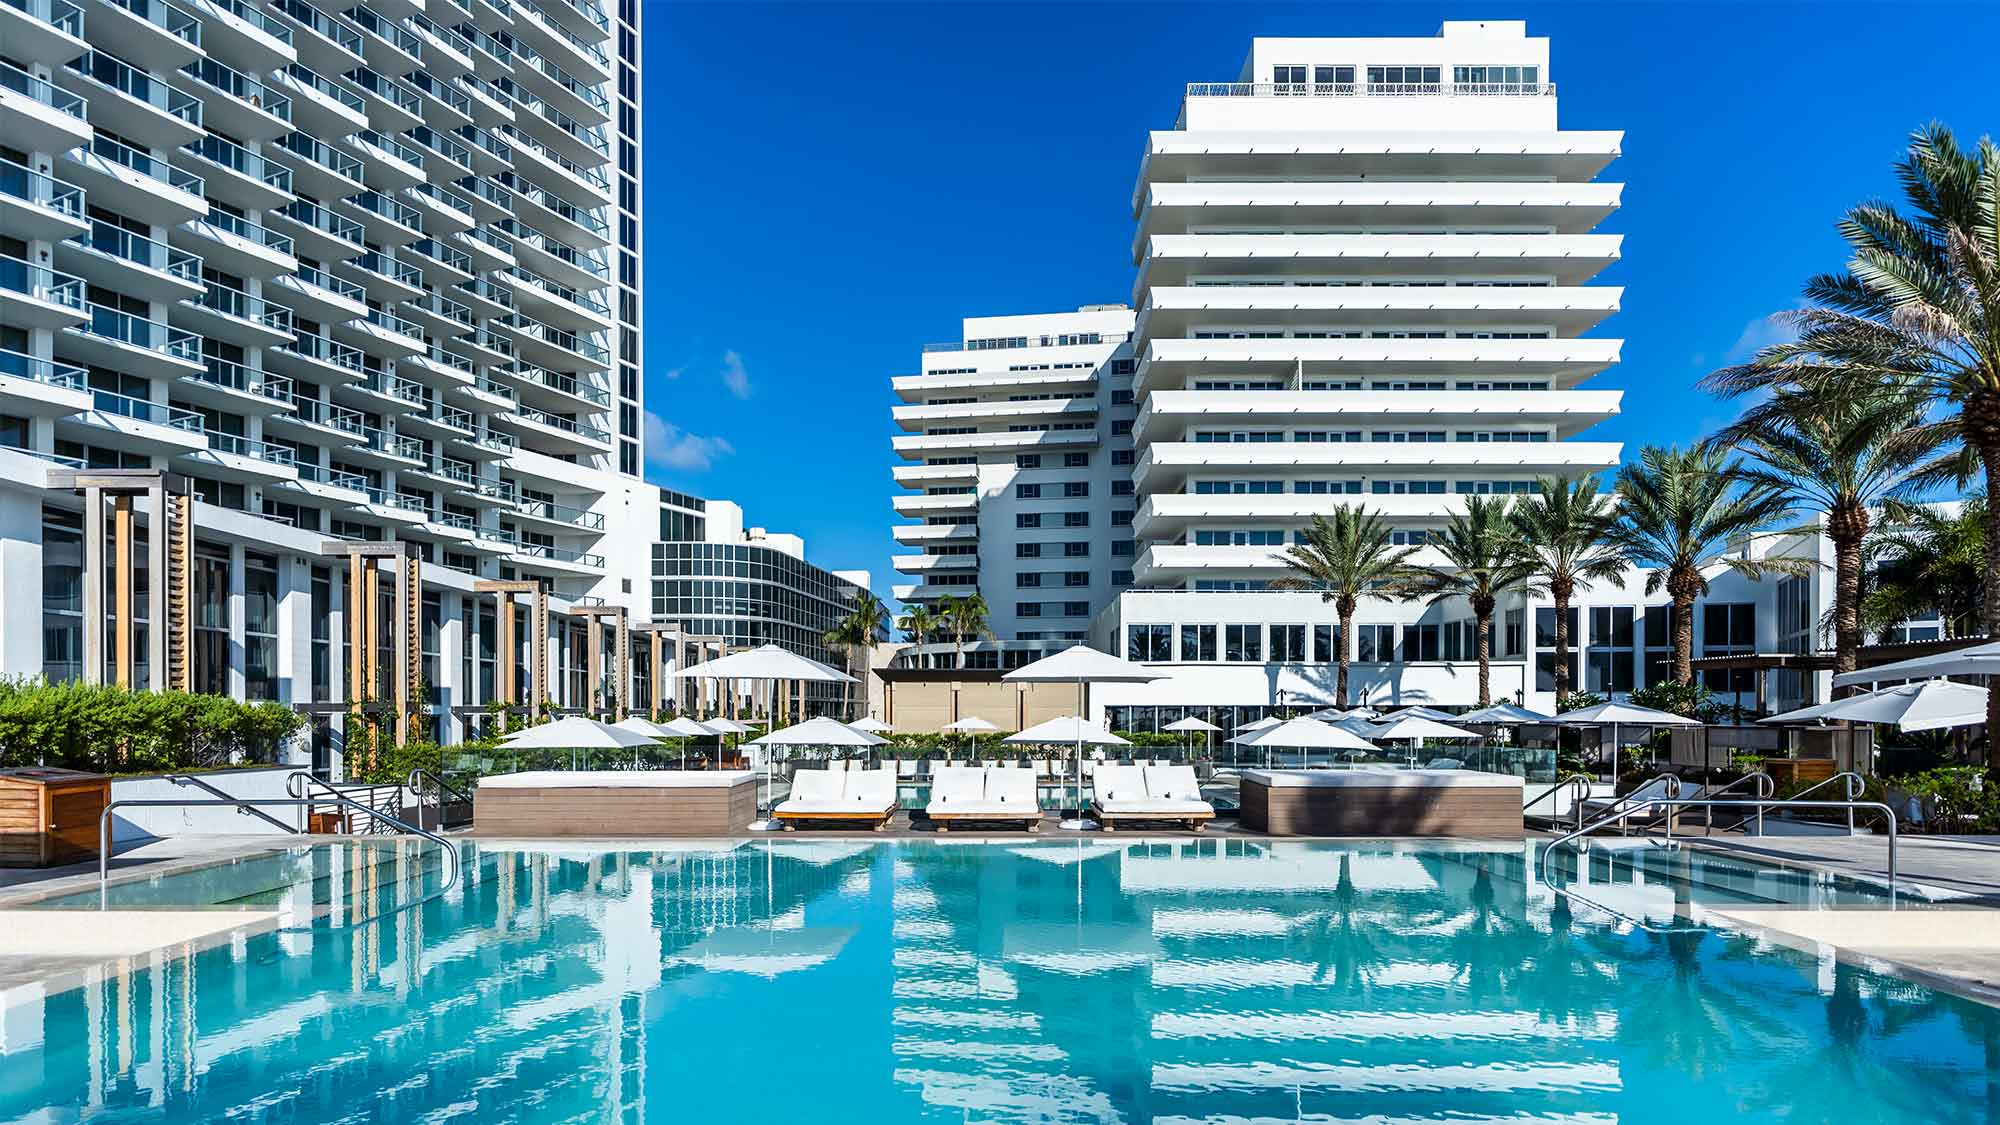 Palladium pool in Nobu Miami Beach Hotel